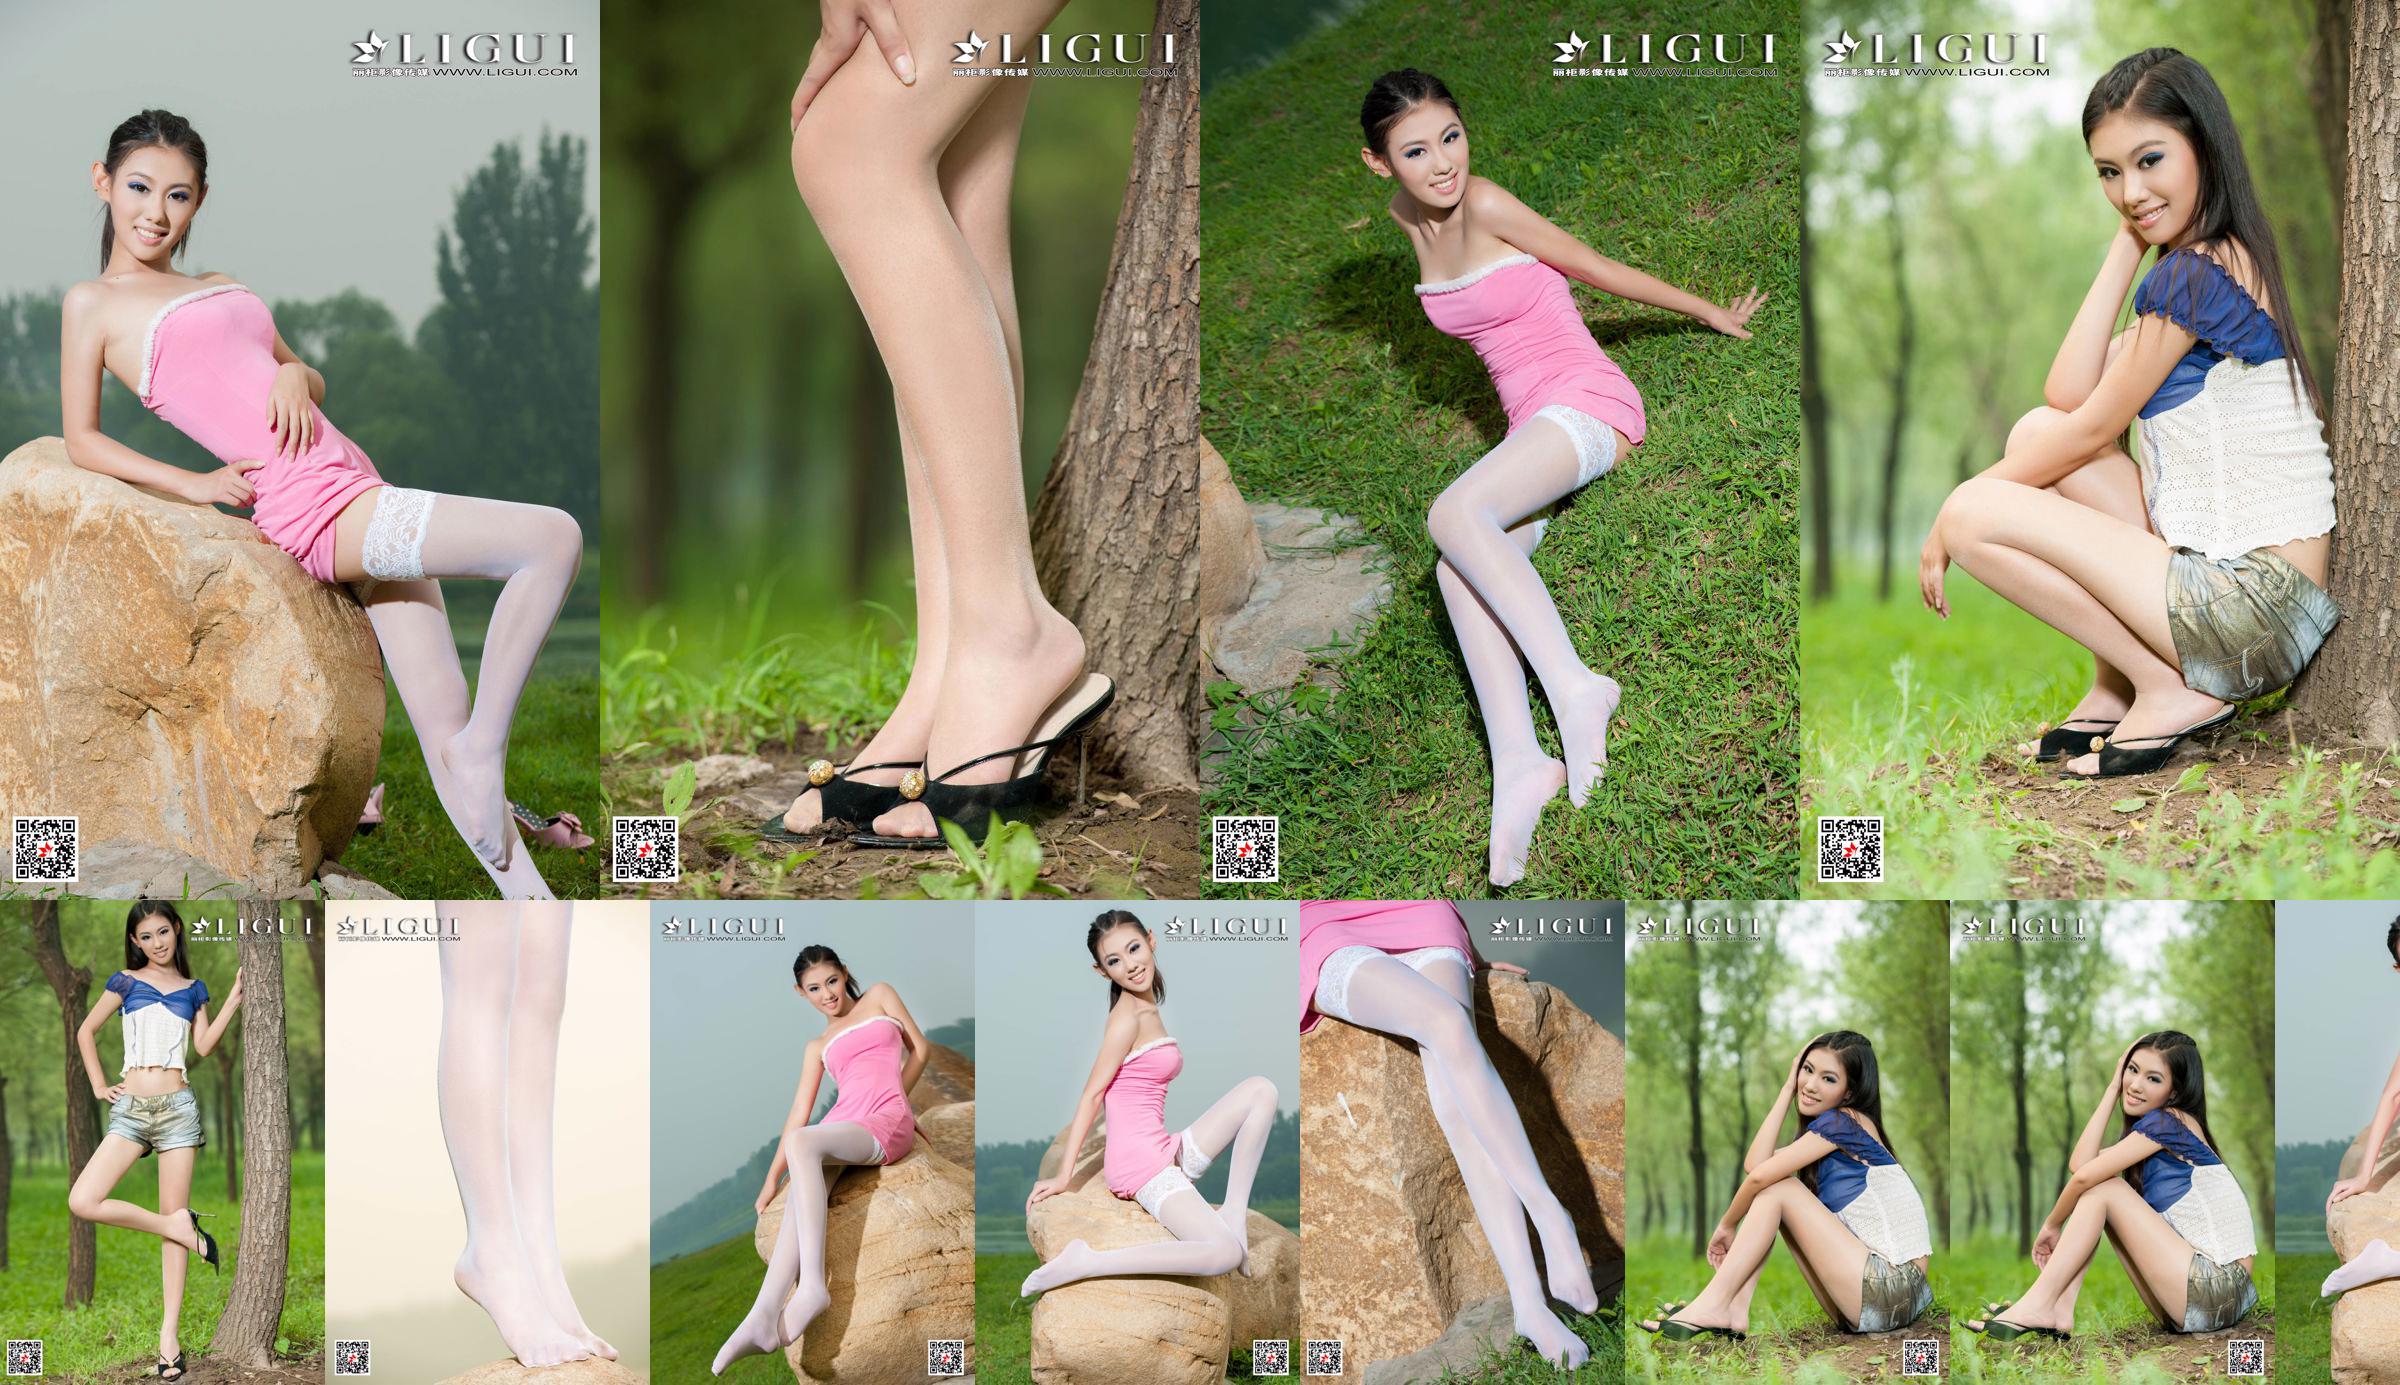 [丽 柜 Ligui] Модель Вэй Лин "Девушка с длинными ногами" Красивые ножки No.8750e9 Страница 1